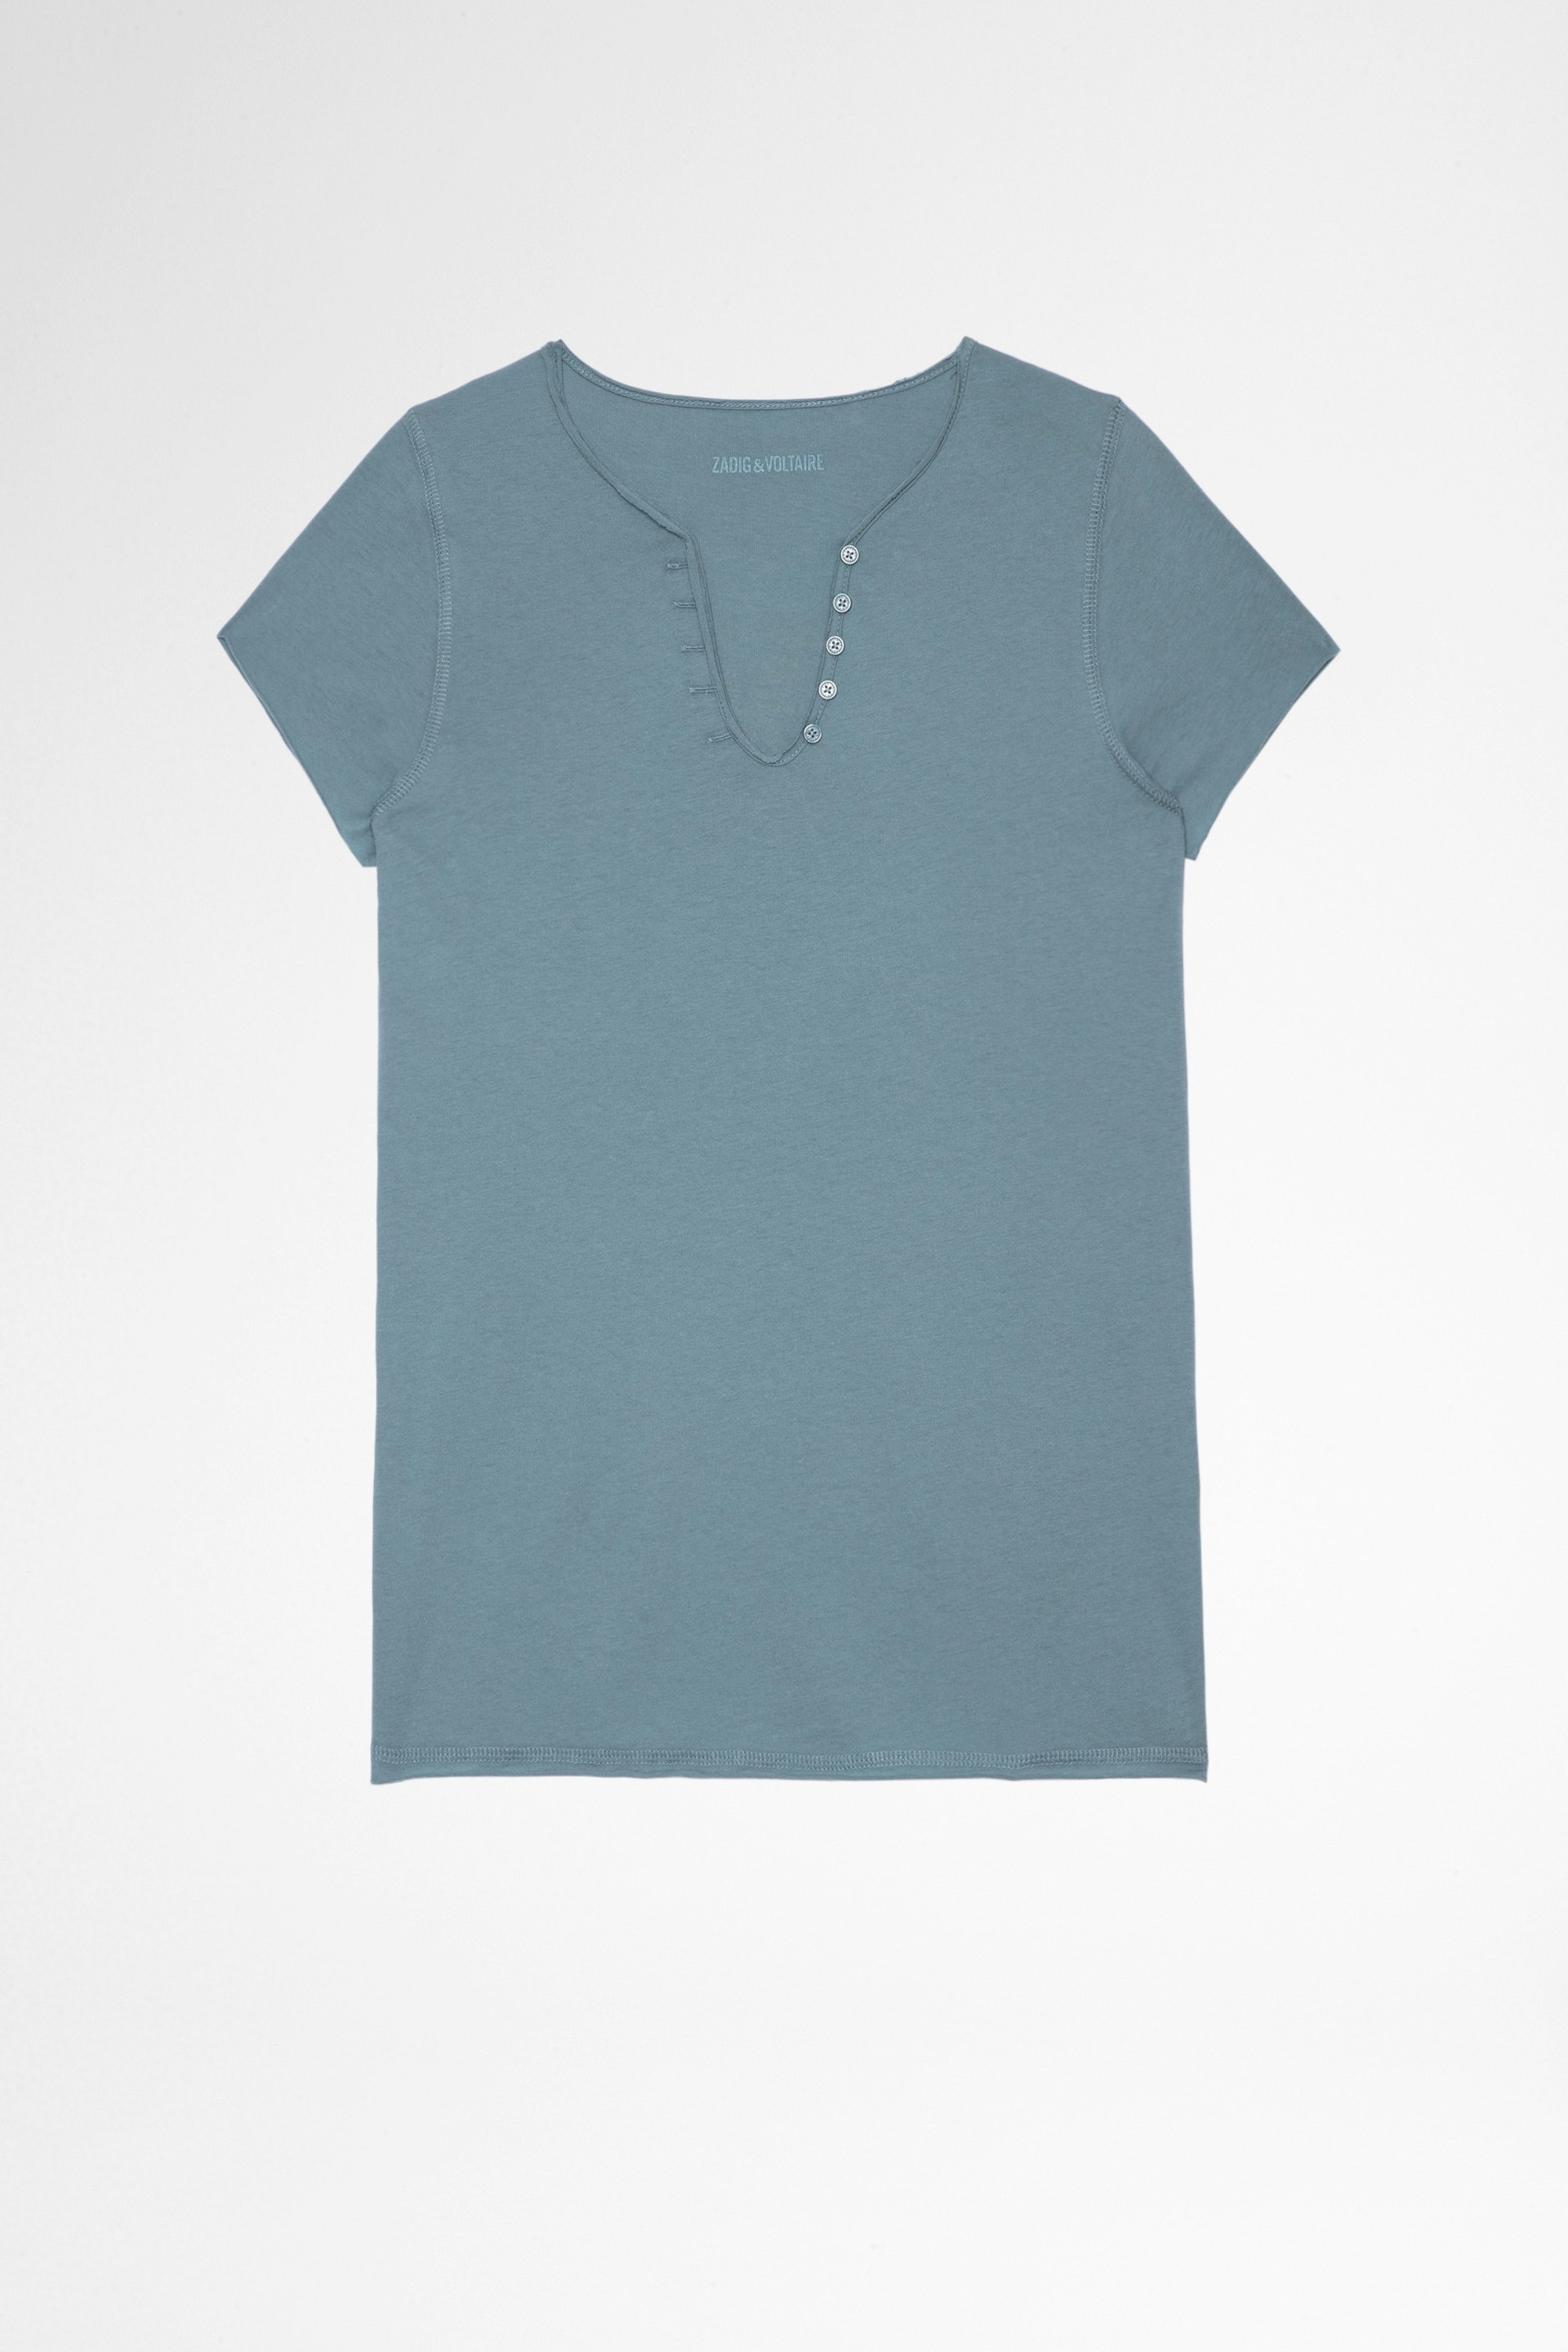 T-shirt tunisien ZV New Blason T-shirt aus blaugrauer Baumwolle mit Henley-Ausschnitt und ZV-Applikation am Rücken für Damen